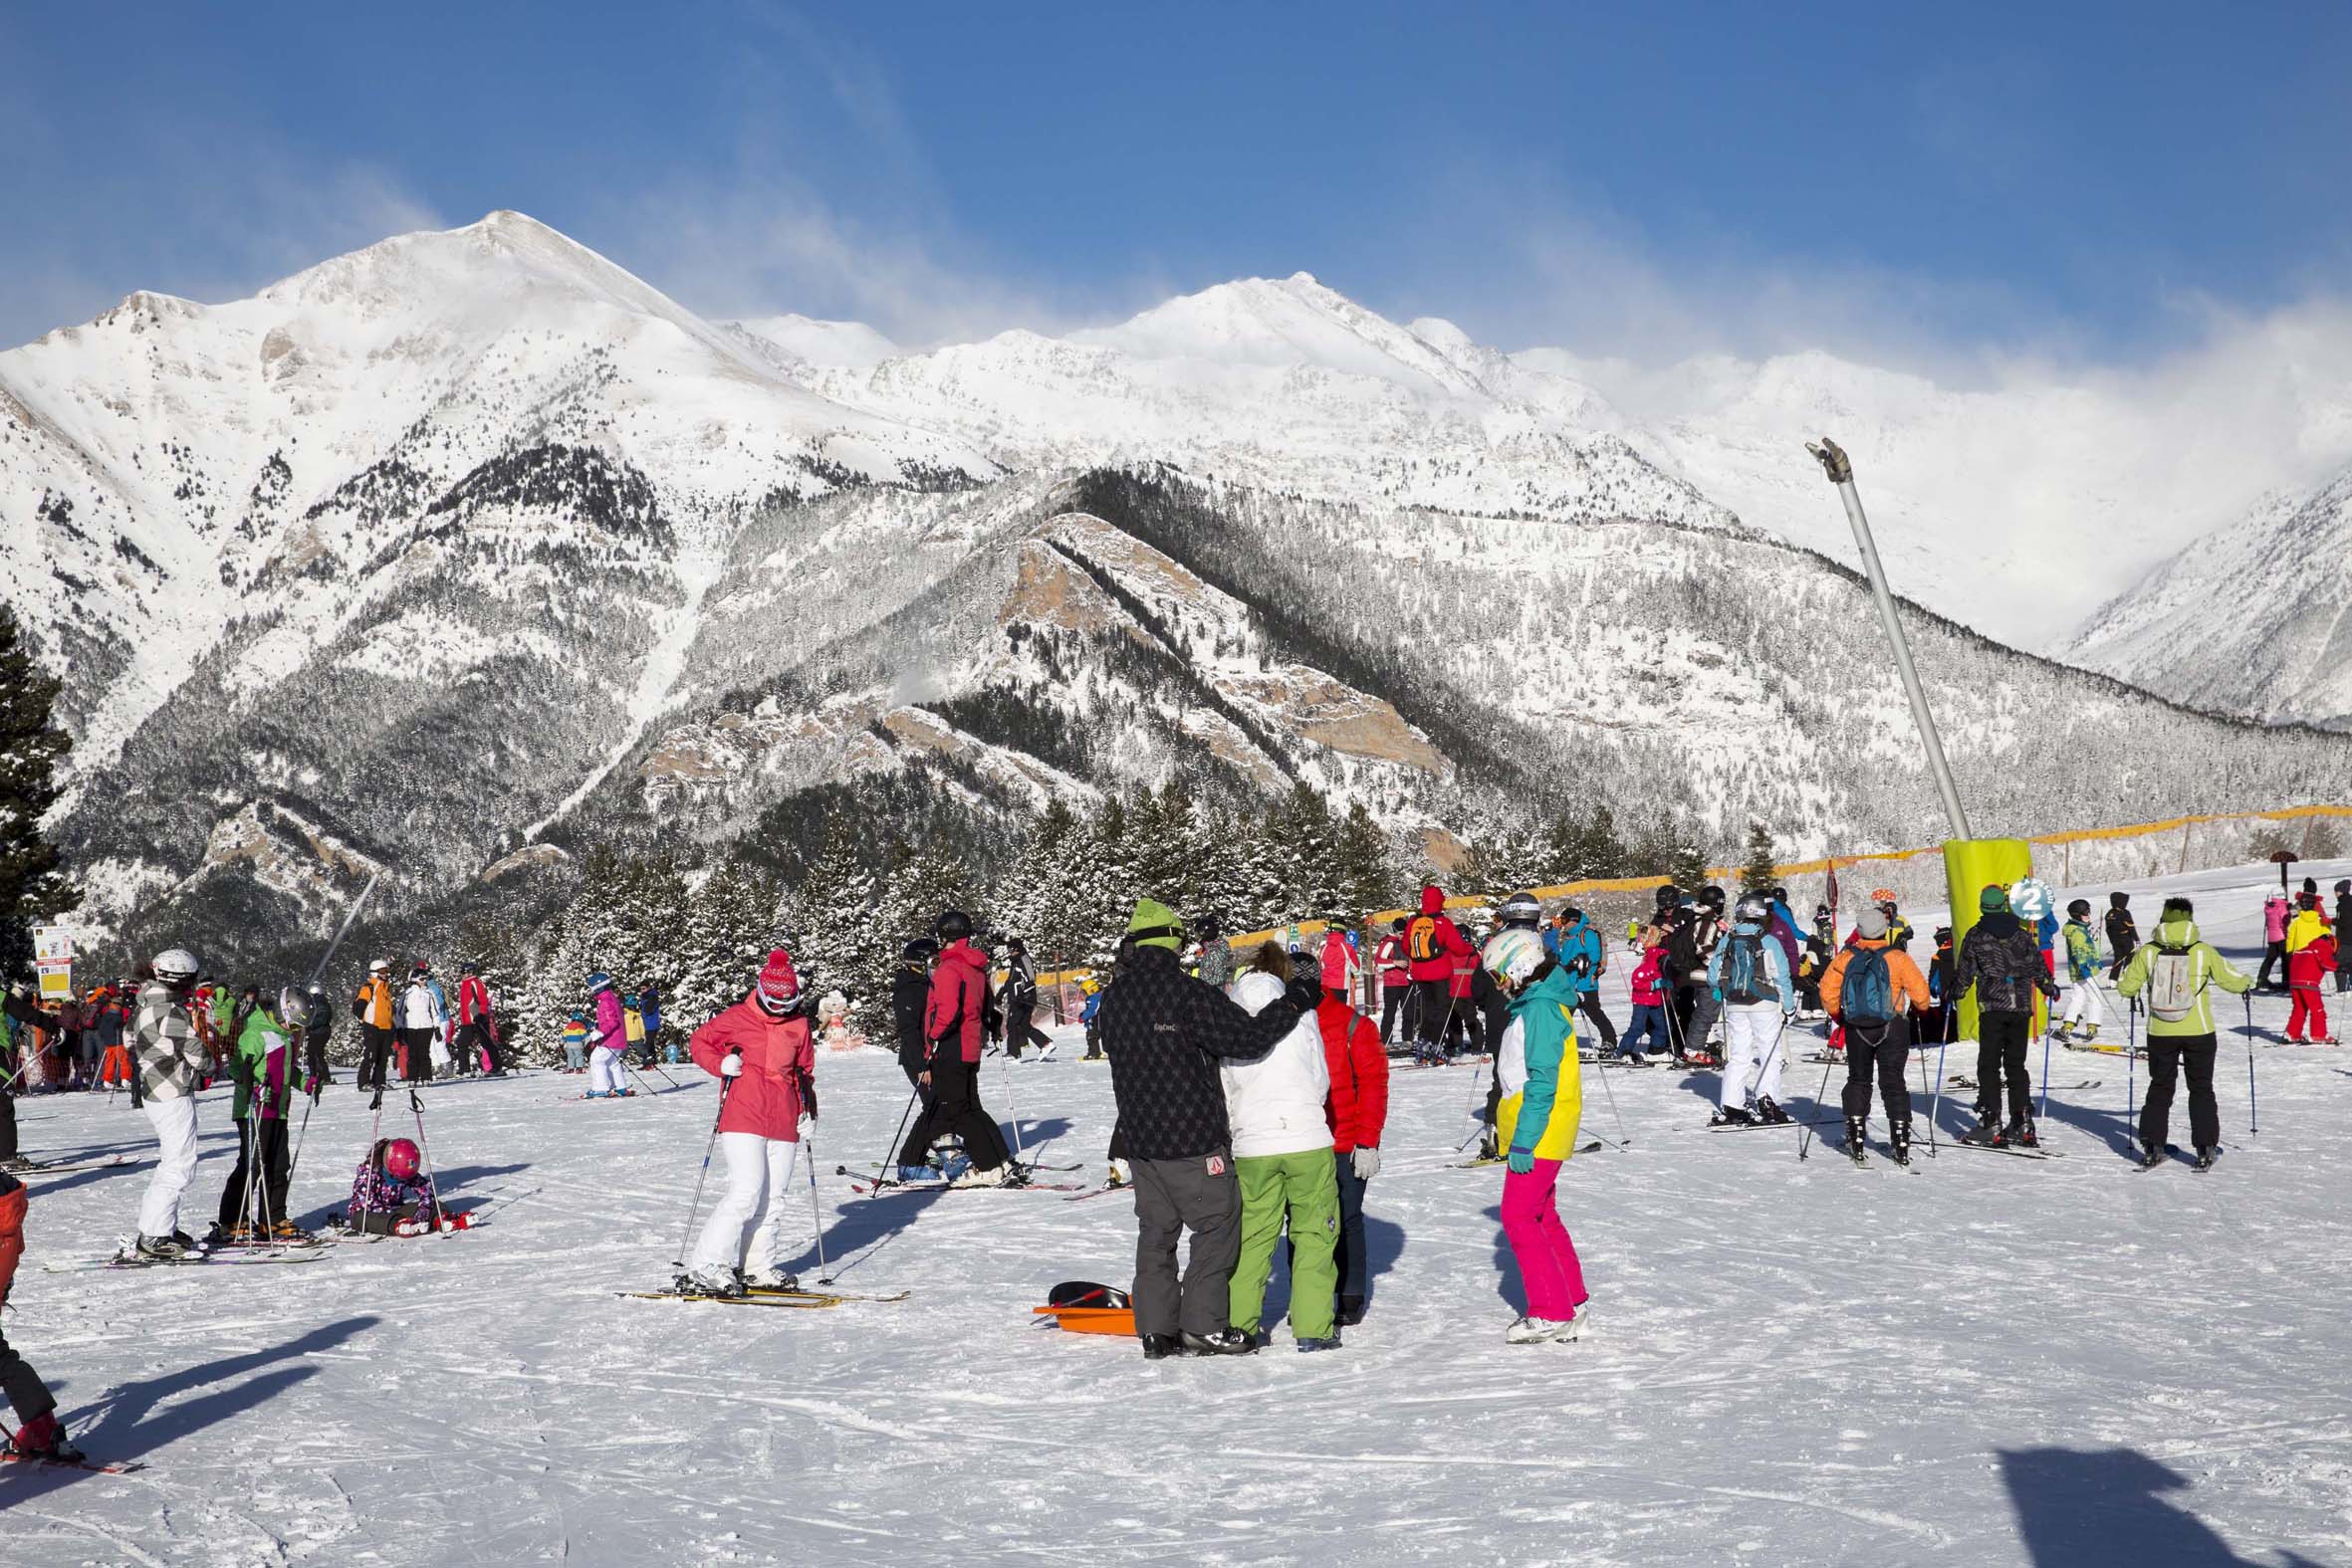 Más de 50.000 esquiadores eligen Vallnord para celebrar Navidad y fin de año